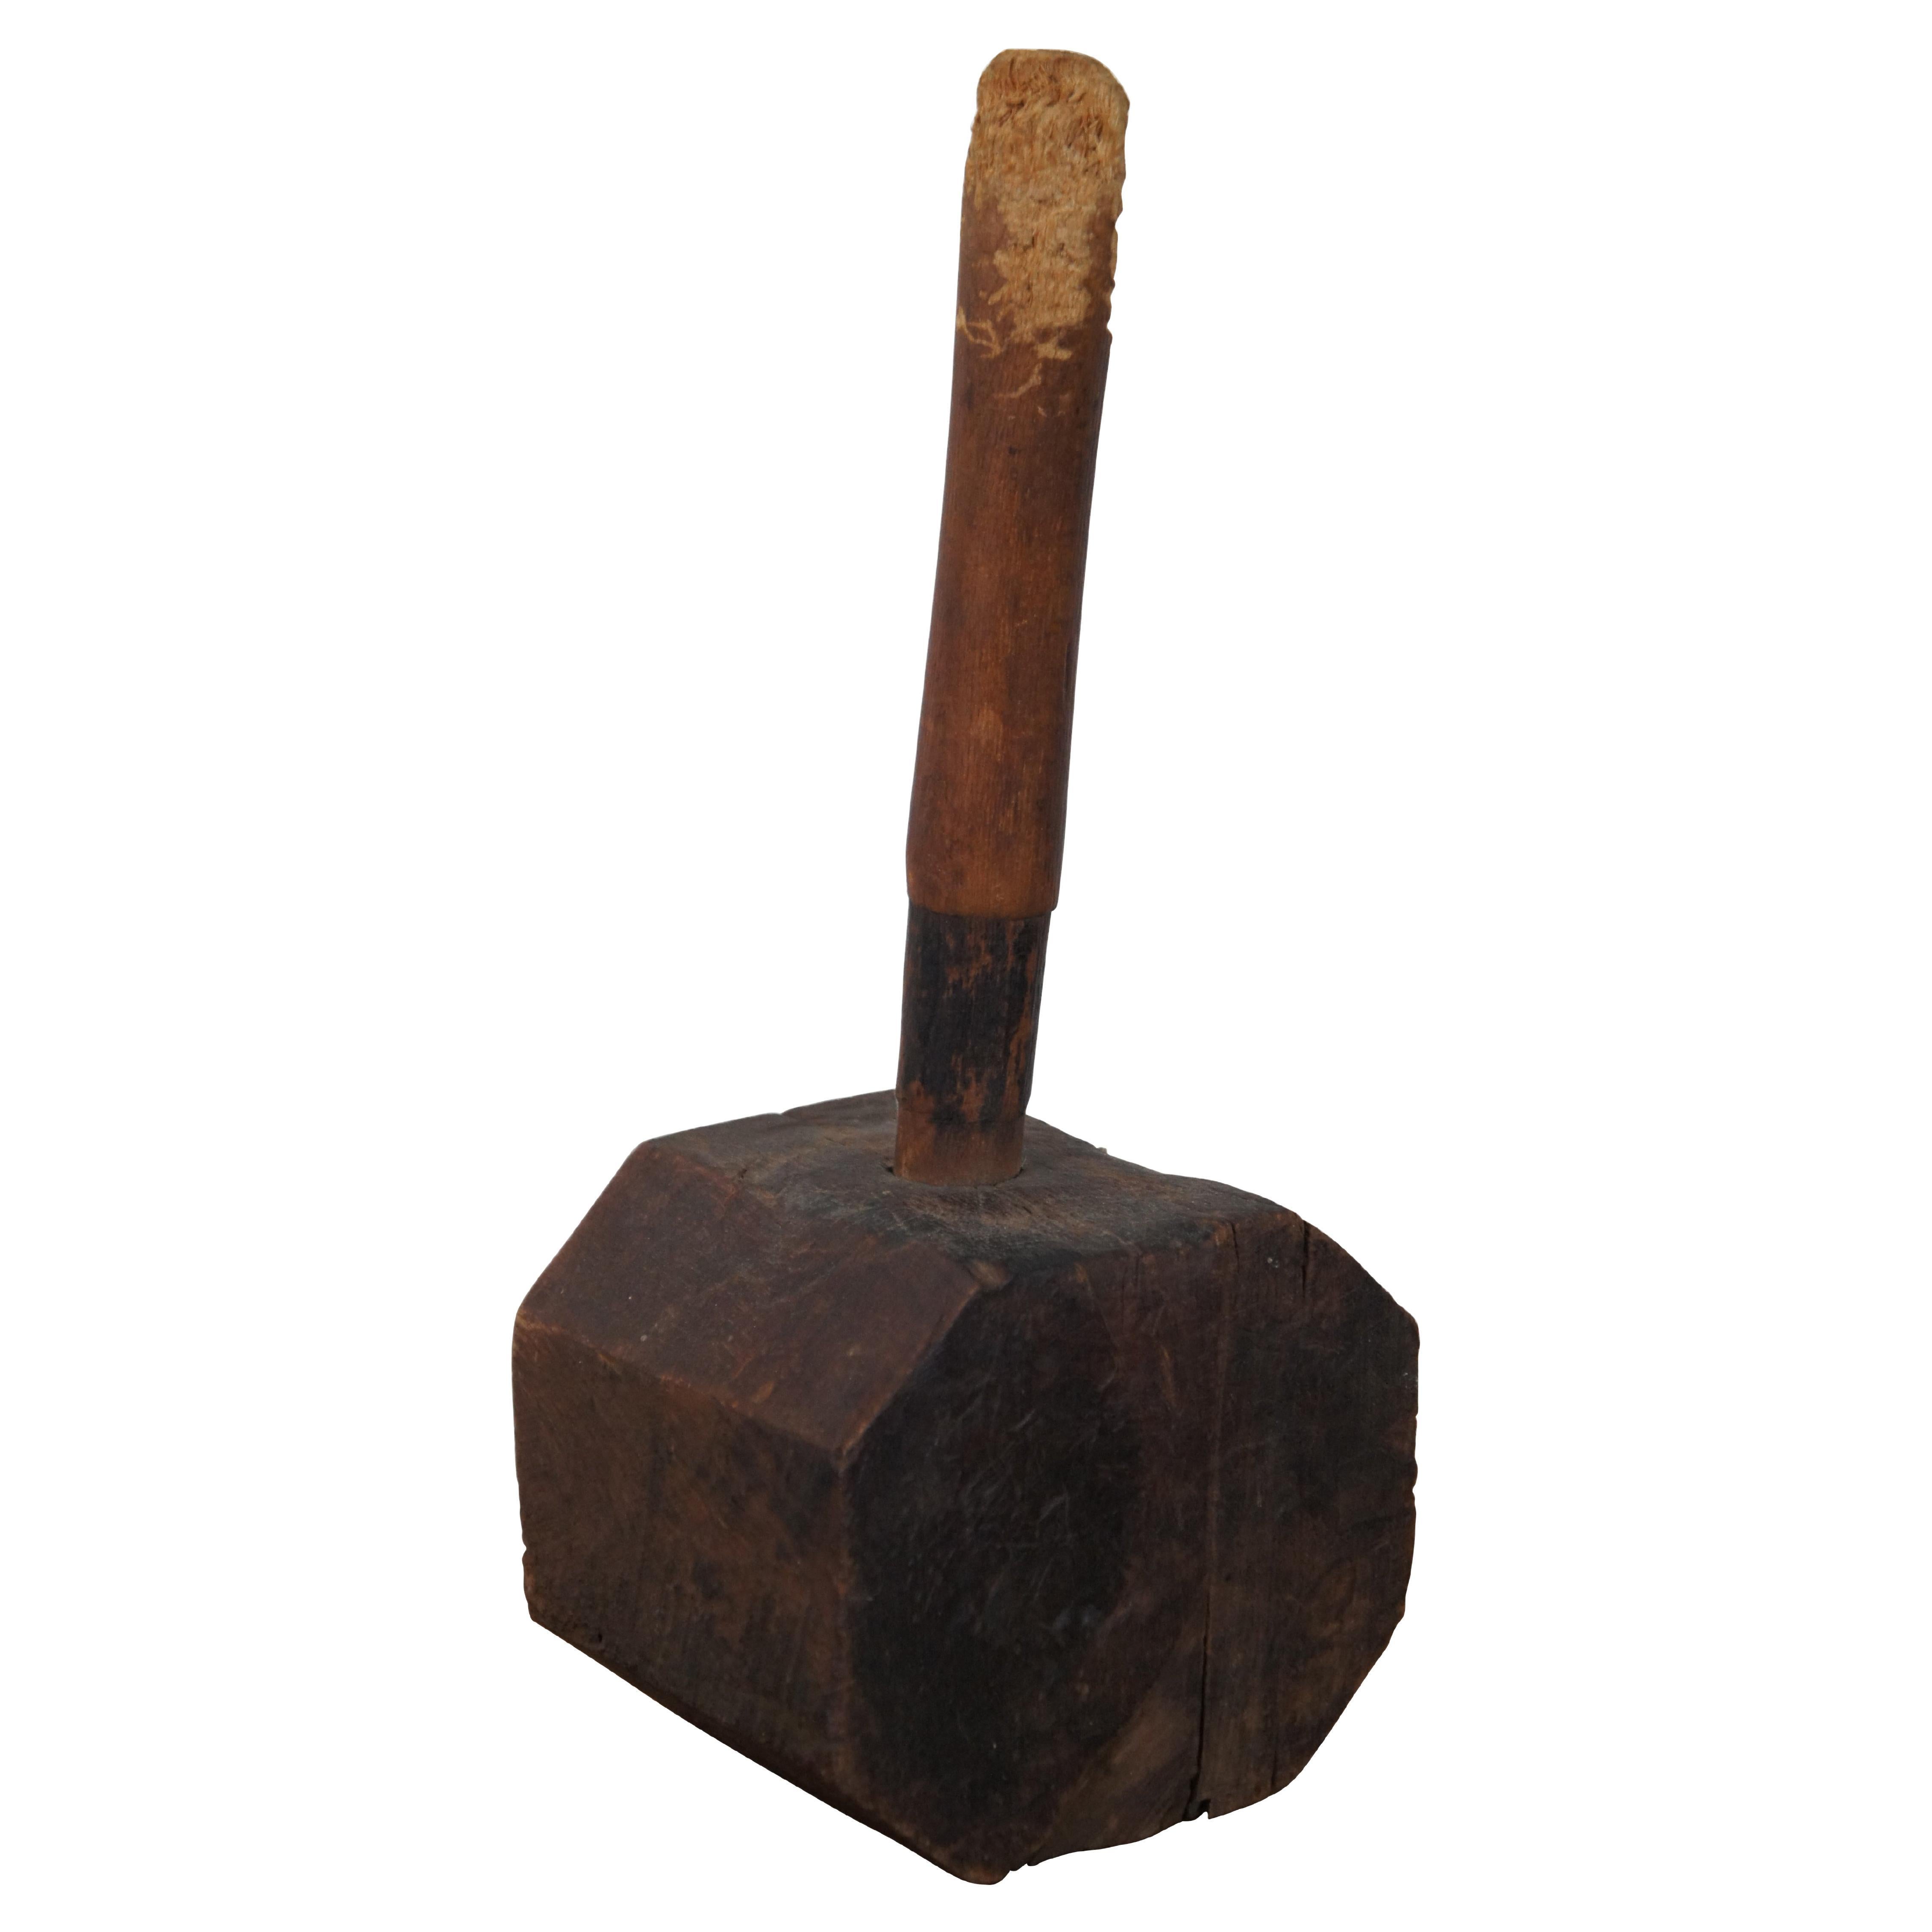 Antique Primitive Rustic Wooden Octagonal Sledge Hammer Carpenter Mallet For Sale